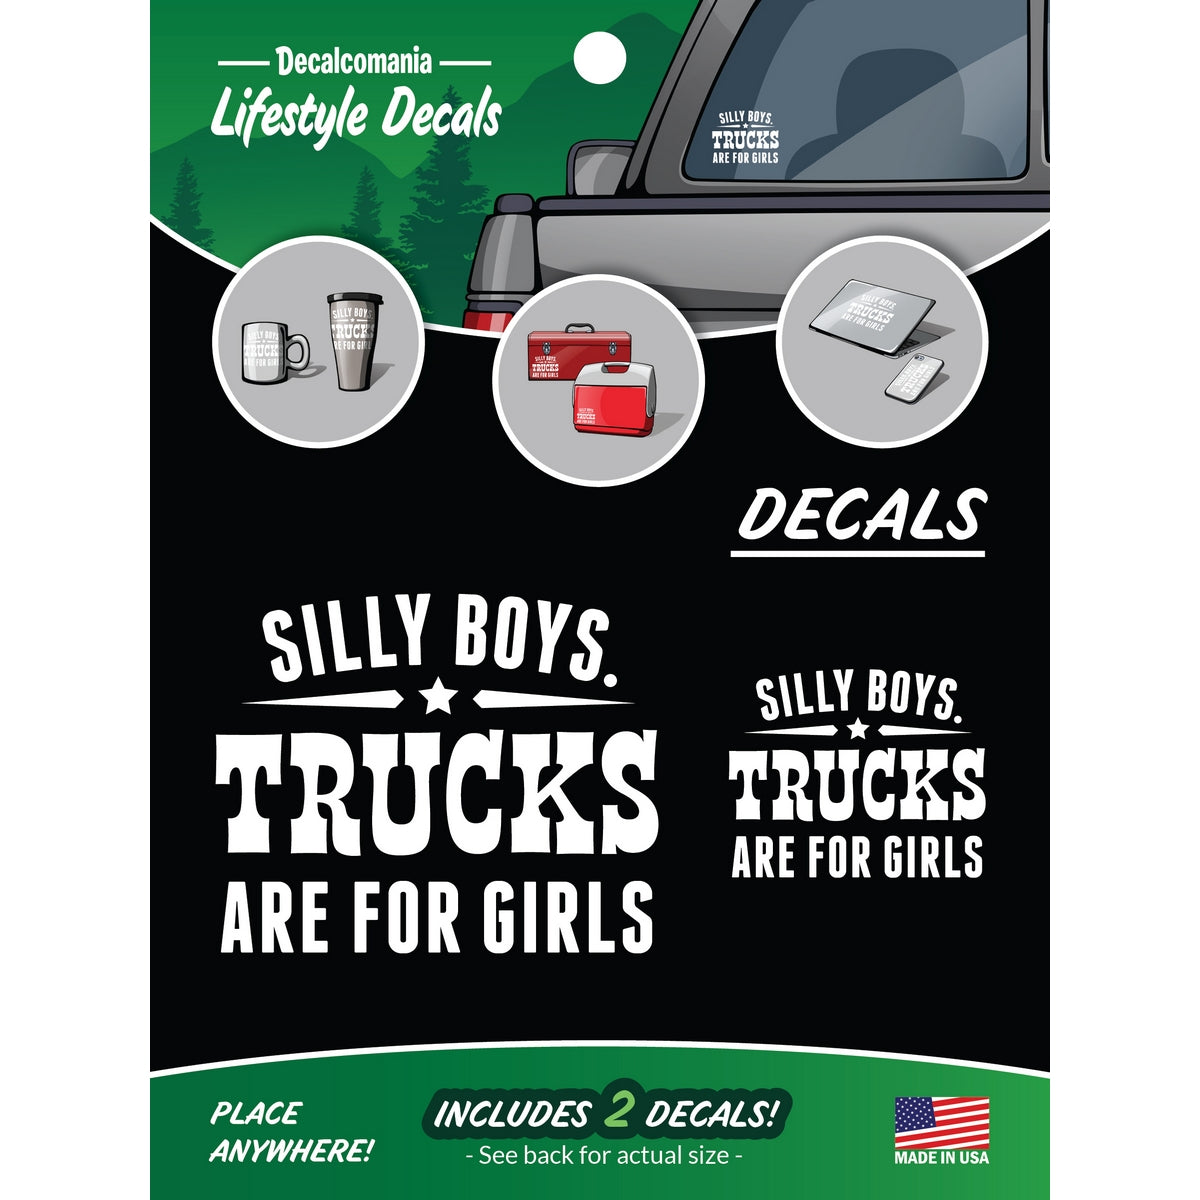 Trucks are for Girls